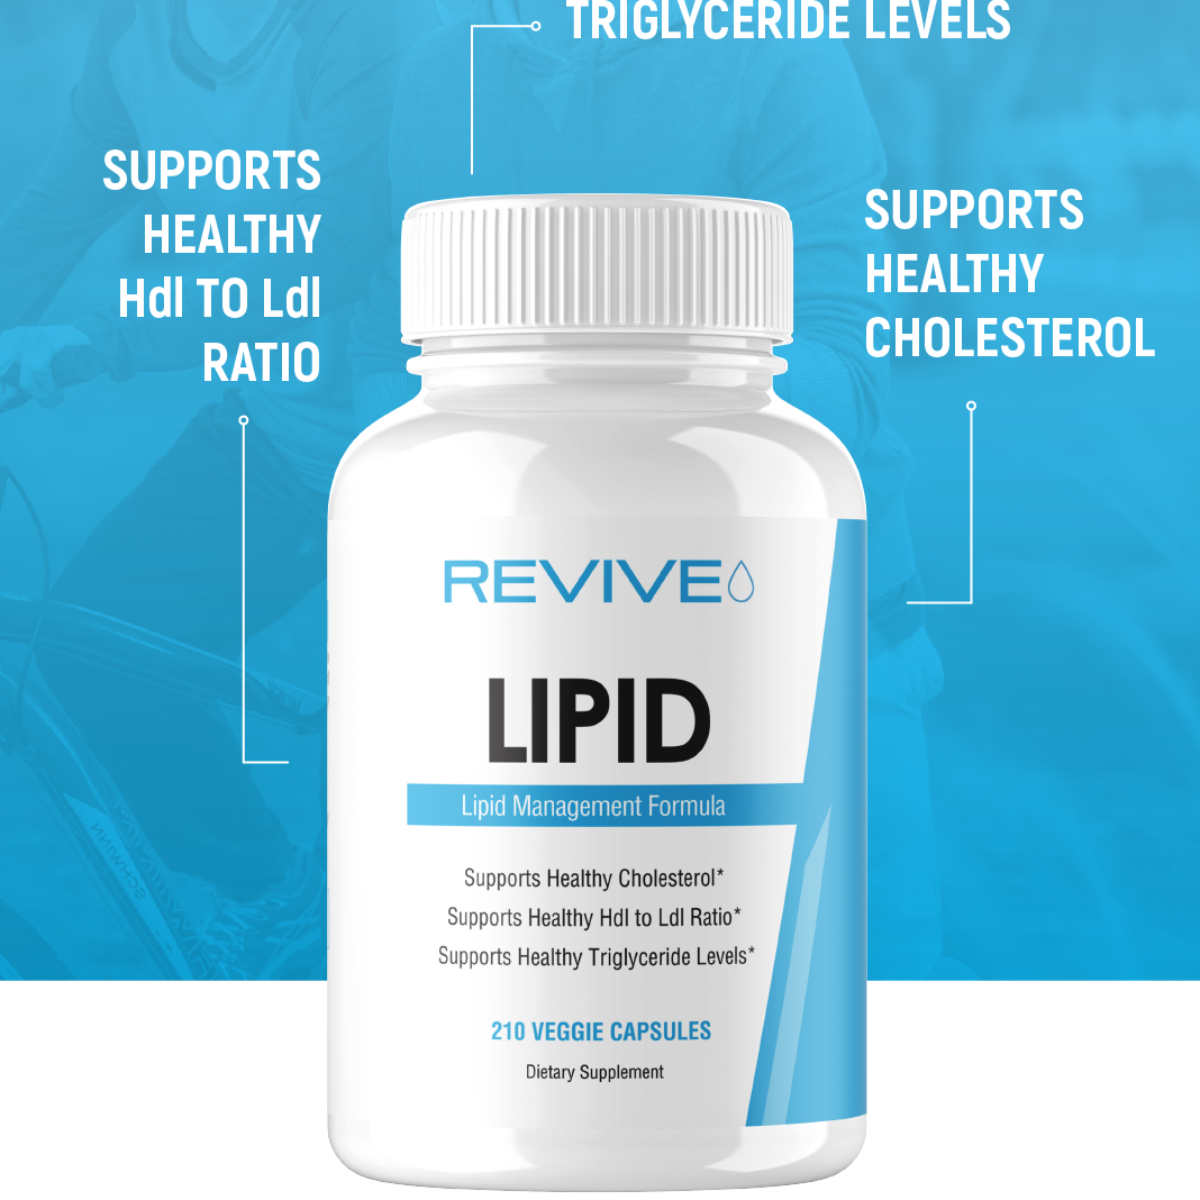 Revive – Lipid 210 Vegetarian Capsules